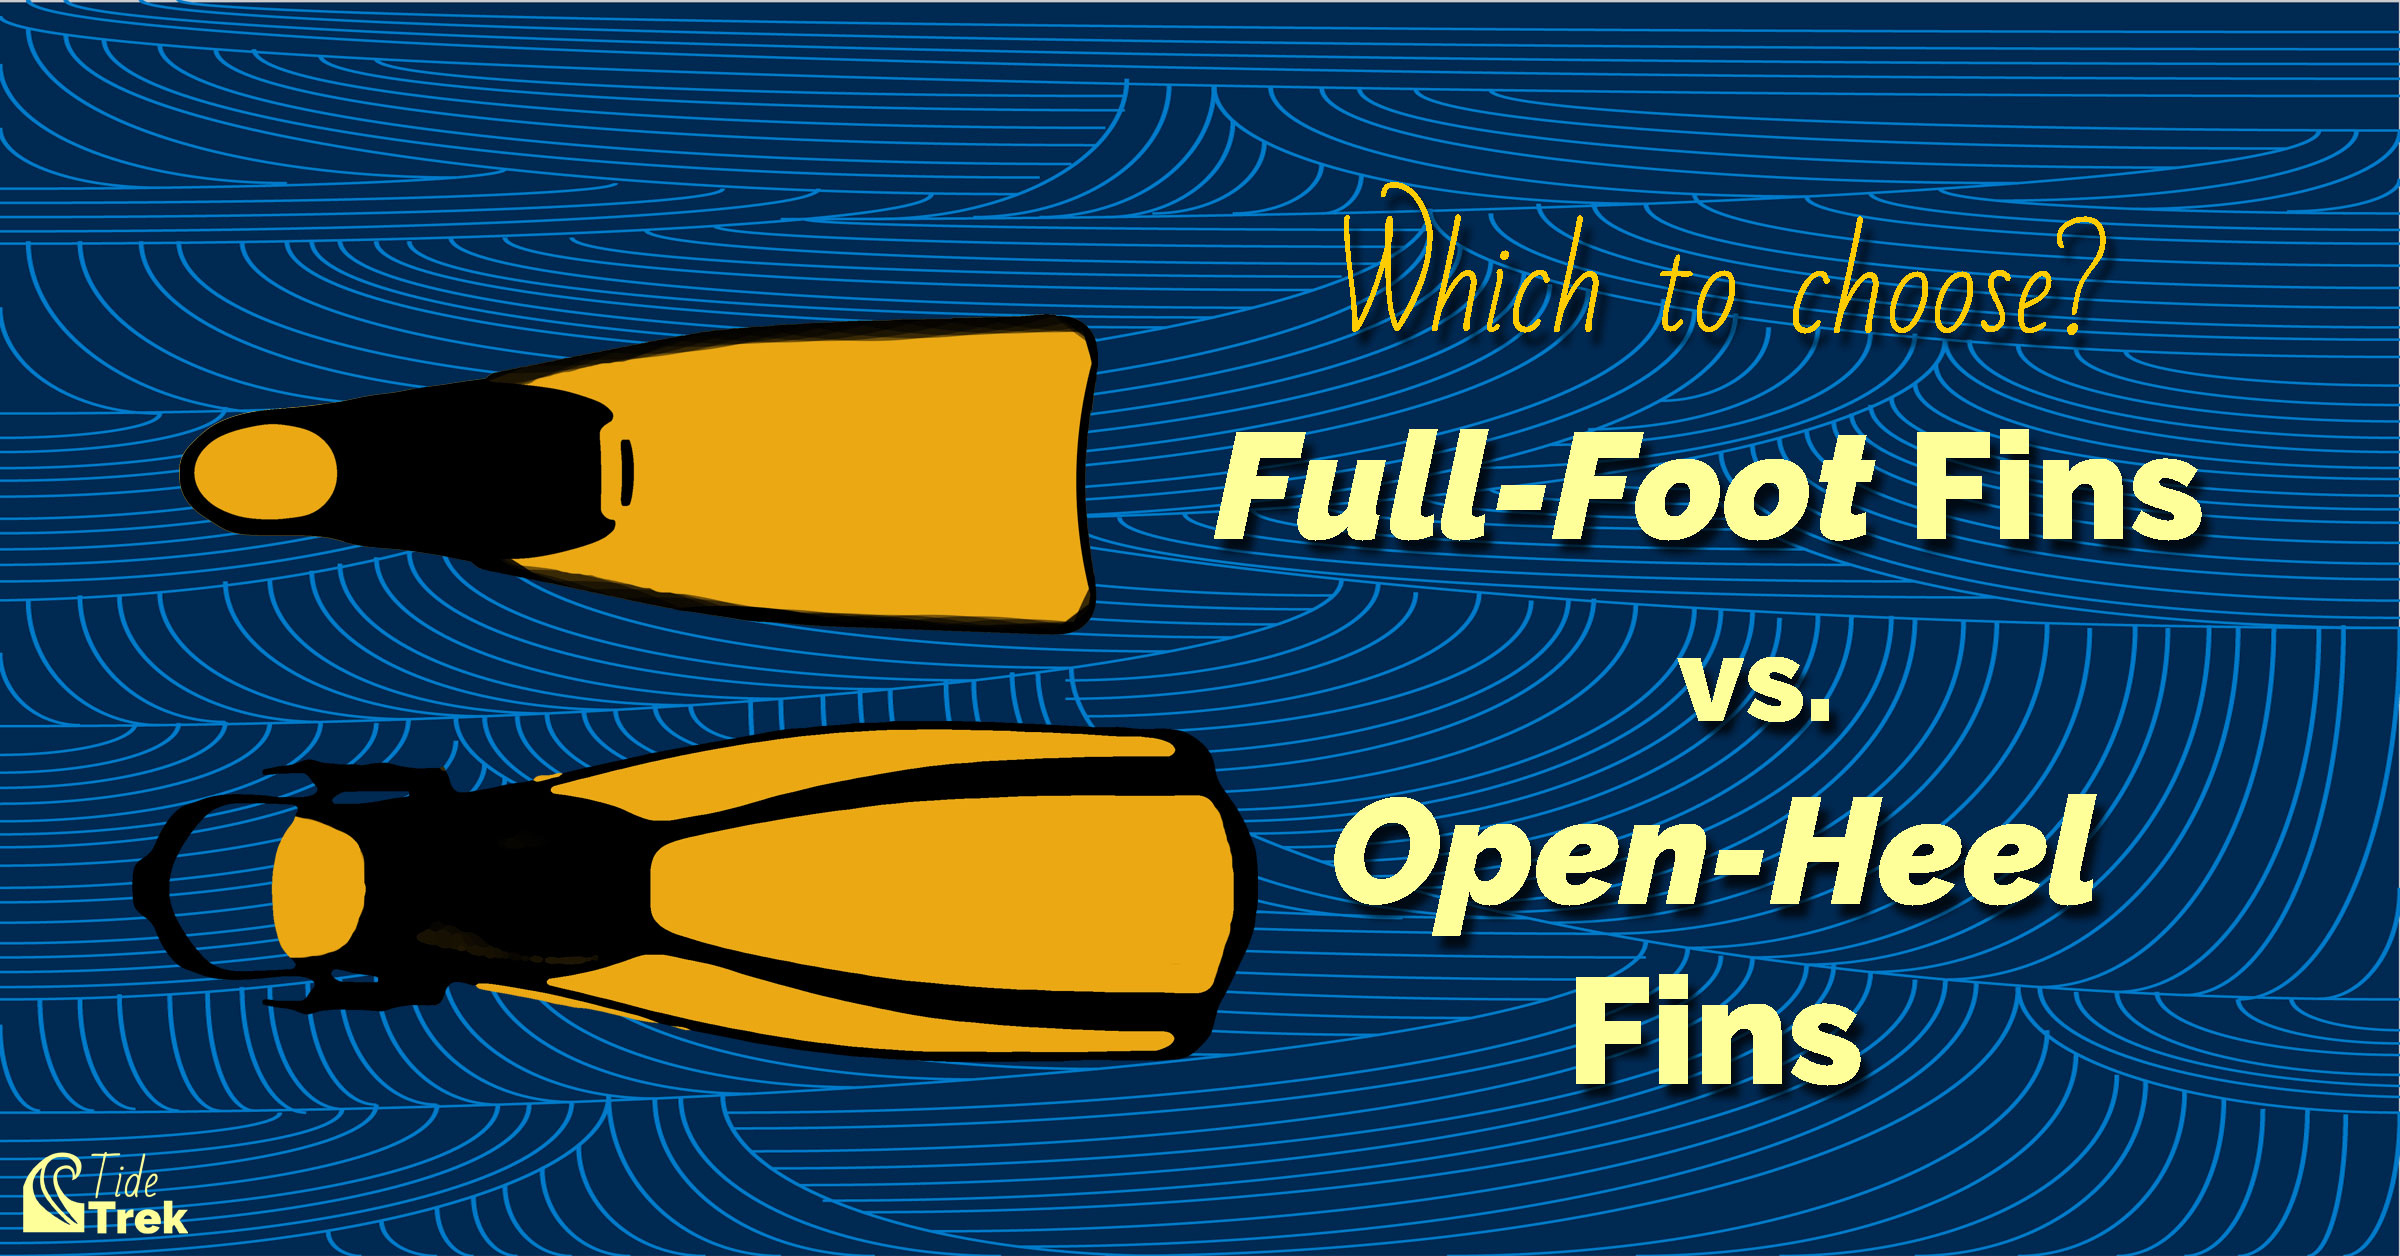 Full-foot fins versus open-heel fins. Which to choose?